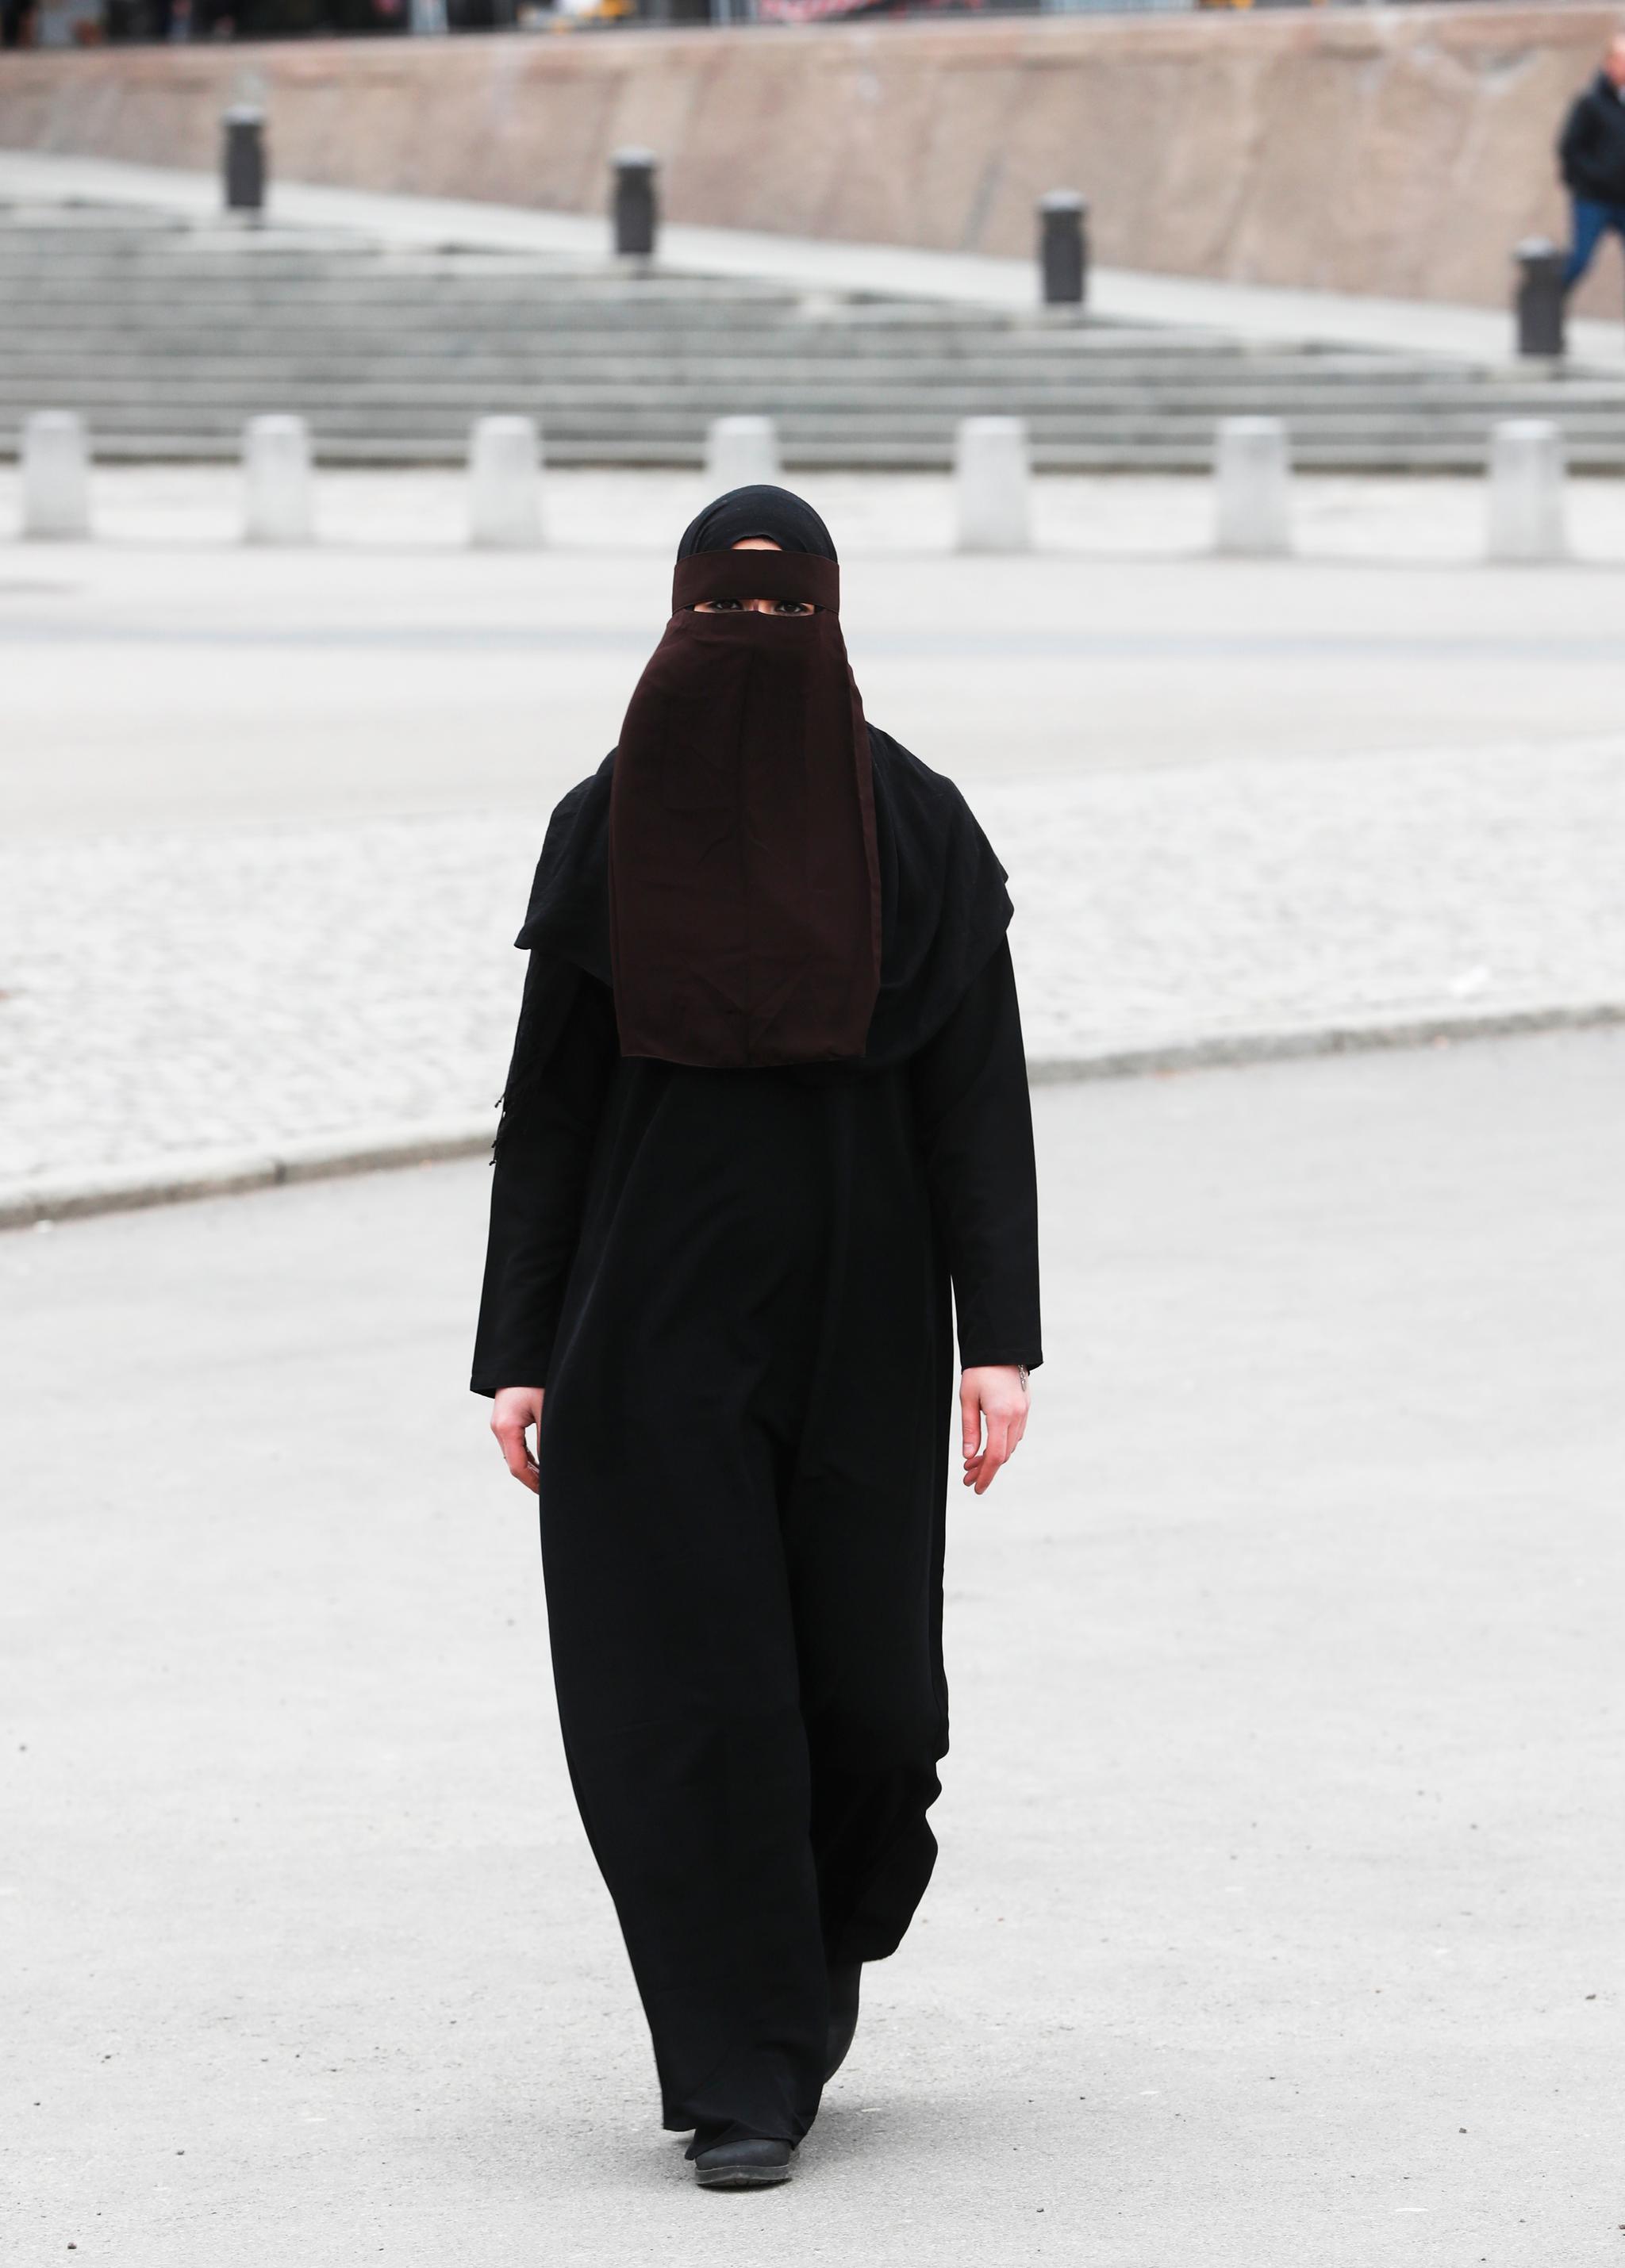 Eksempel på kvinne iført niqab